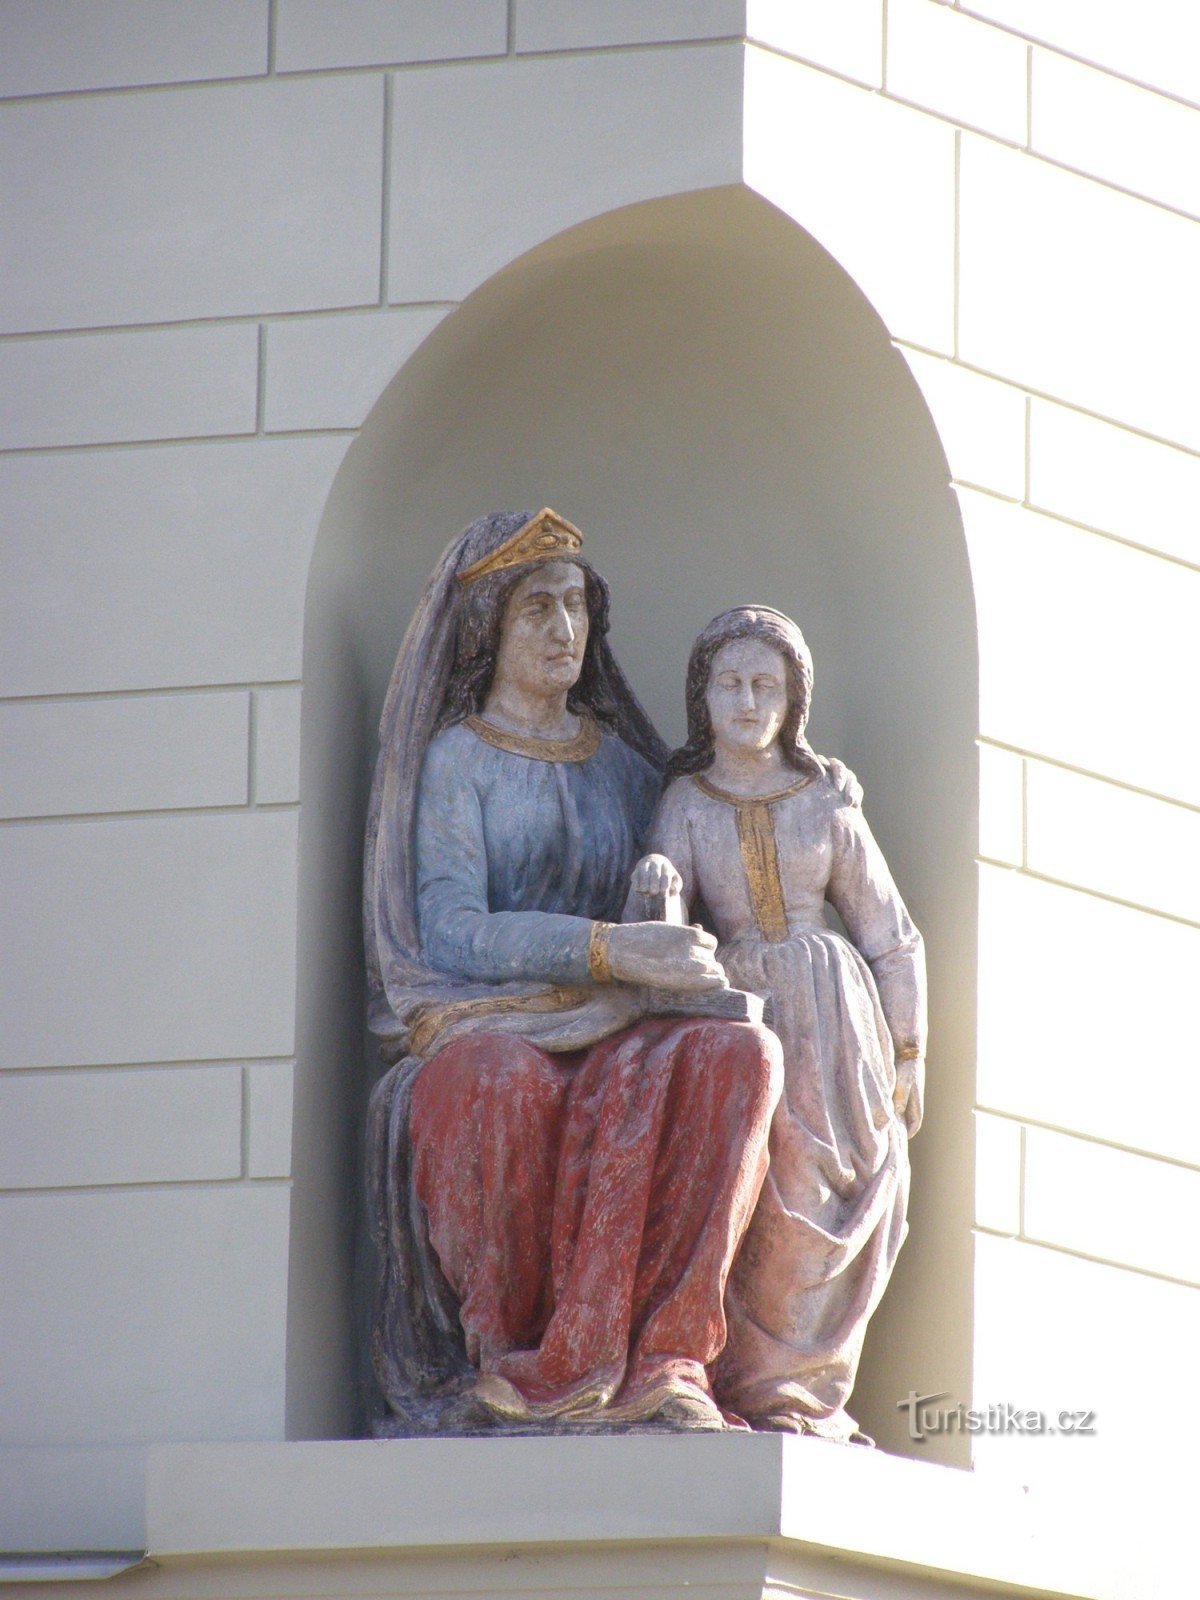 Týnec nad Labem - borgarens hus nr 74 med statyn av St. Anne och Jungfru Maria